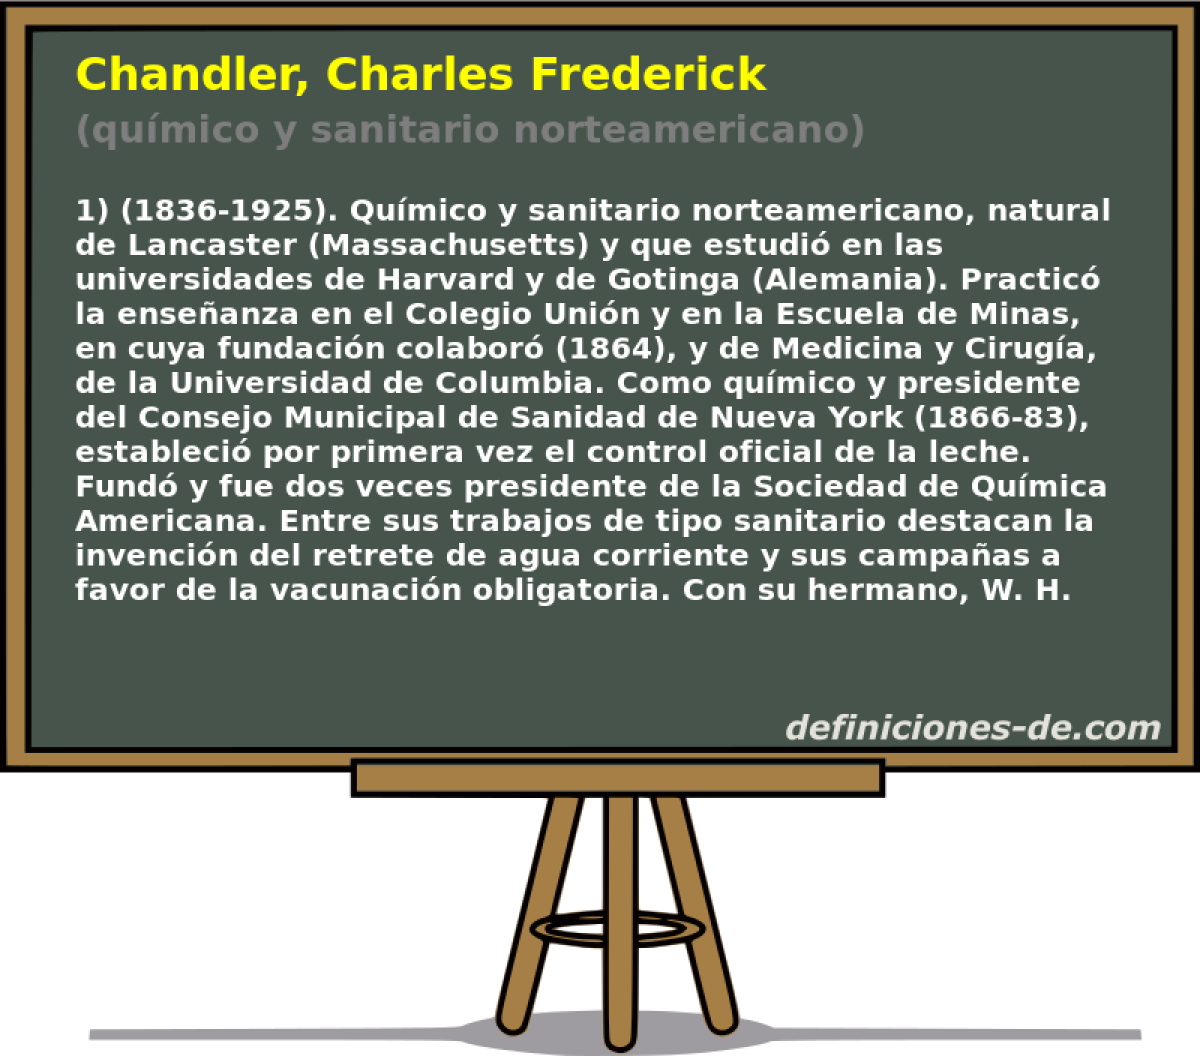 Chandler, Charles Frederick (qumico y sanitario norteamericano)